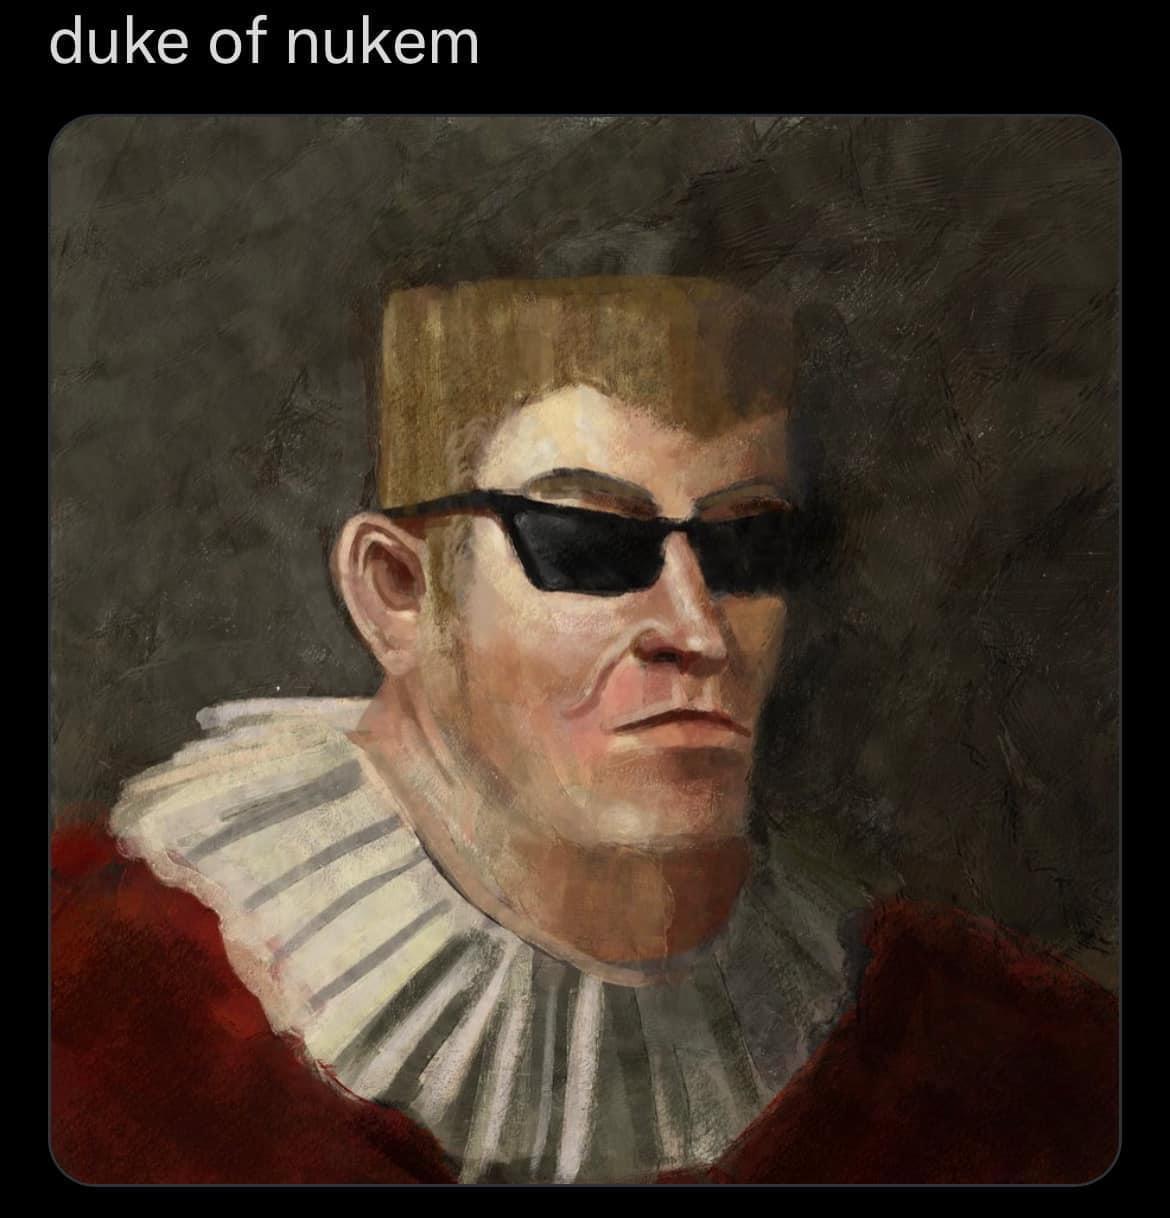 gaming memes  - good - duke of nukem